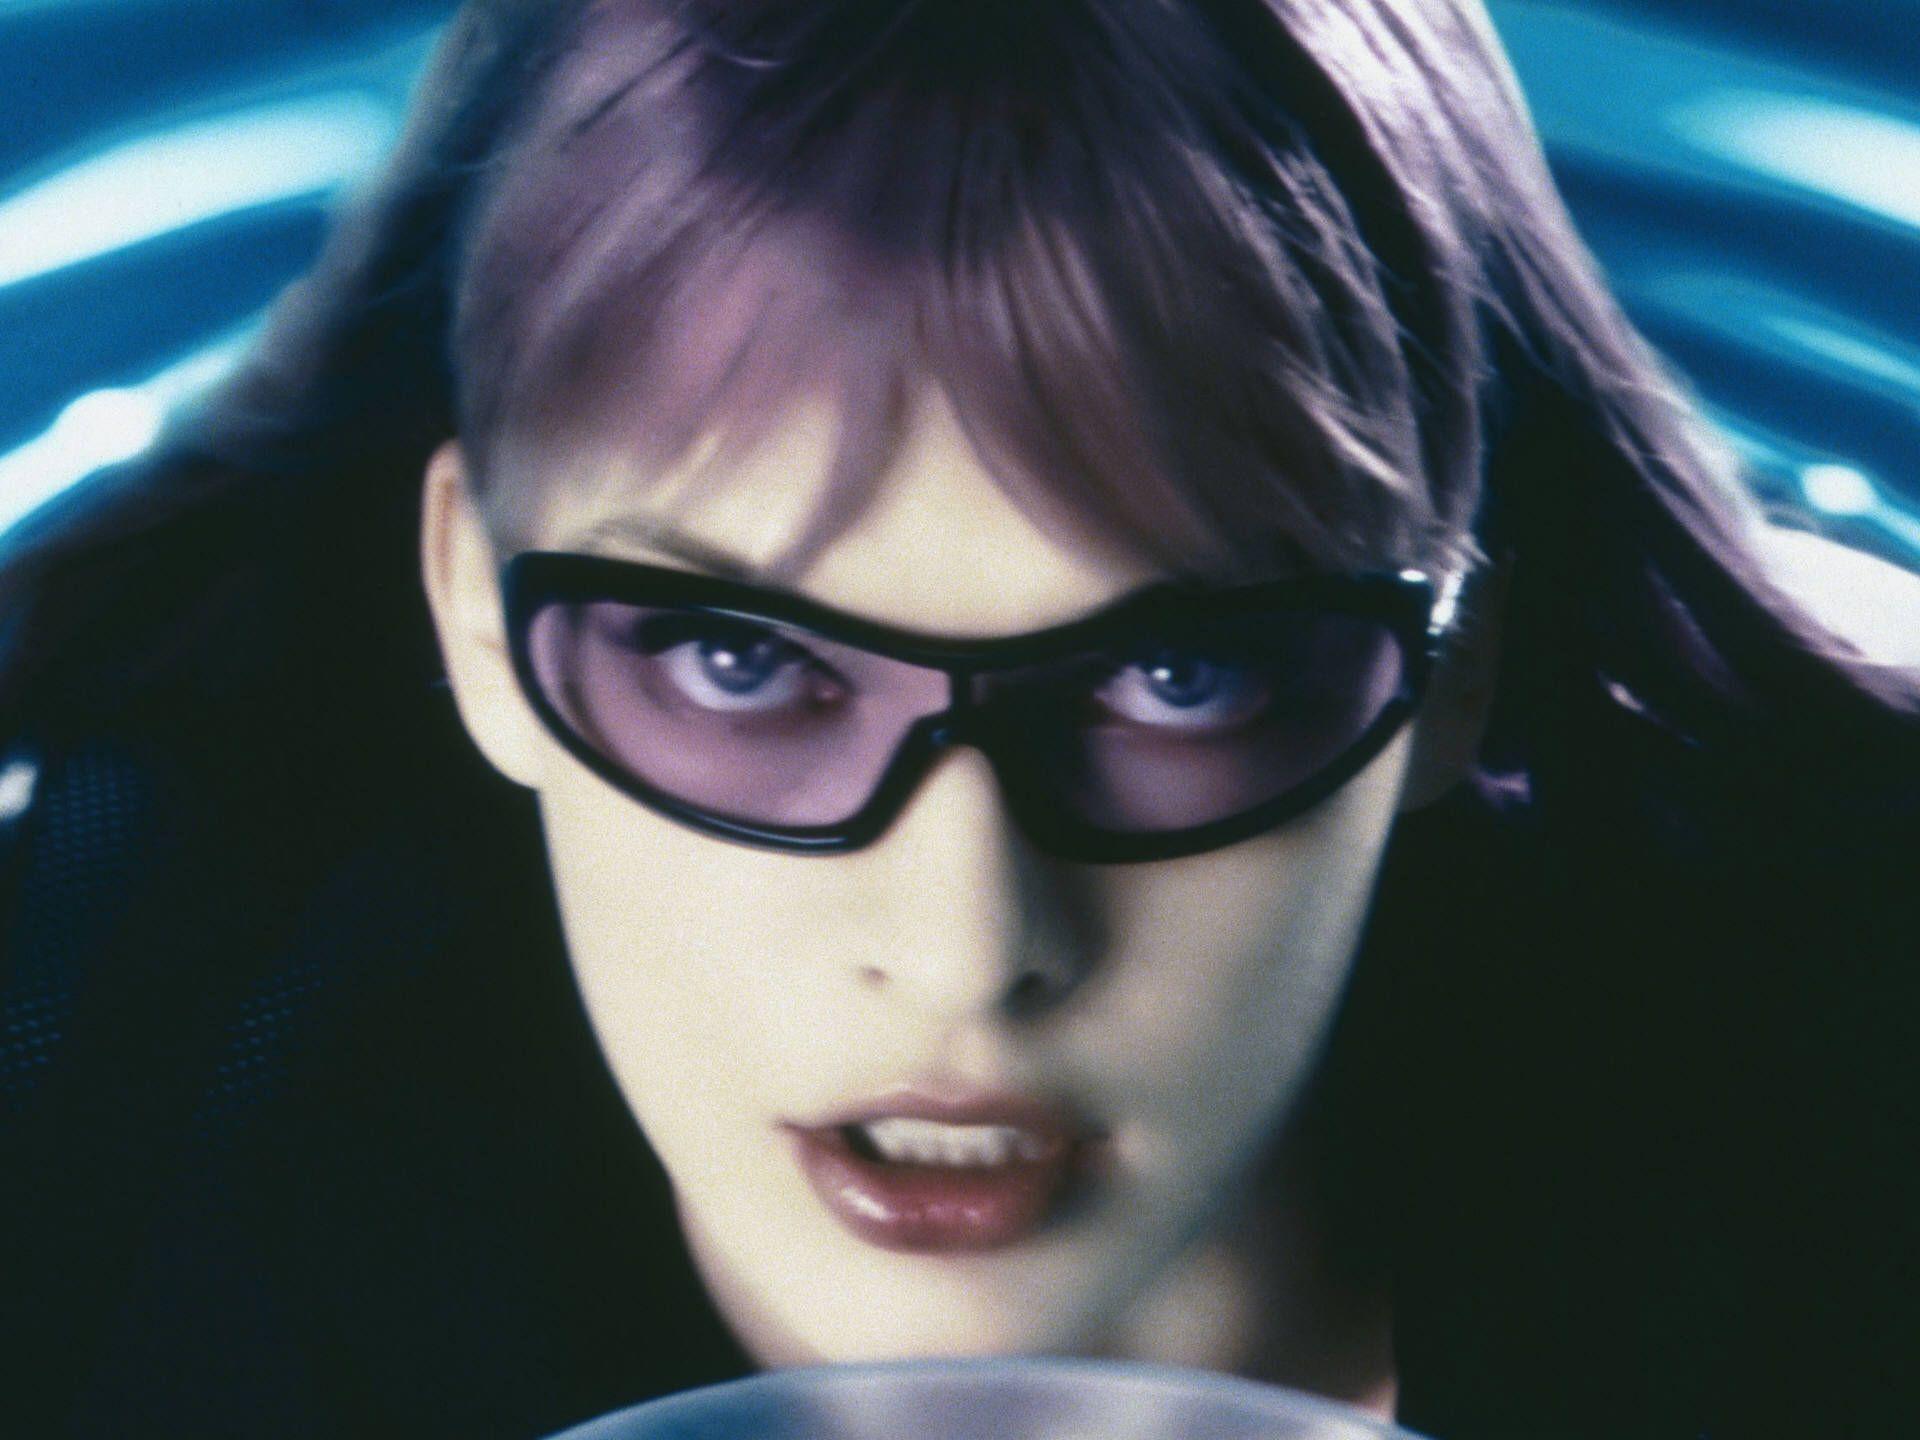 actress, Ultraviolet, Milla Jovovich Wallpaper / WallpaperJam.com